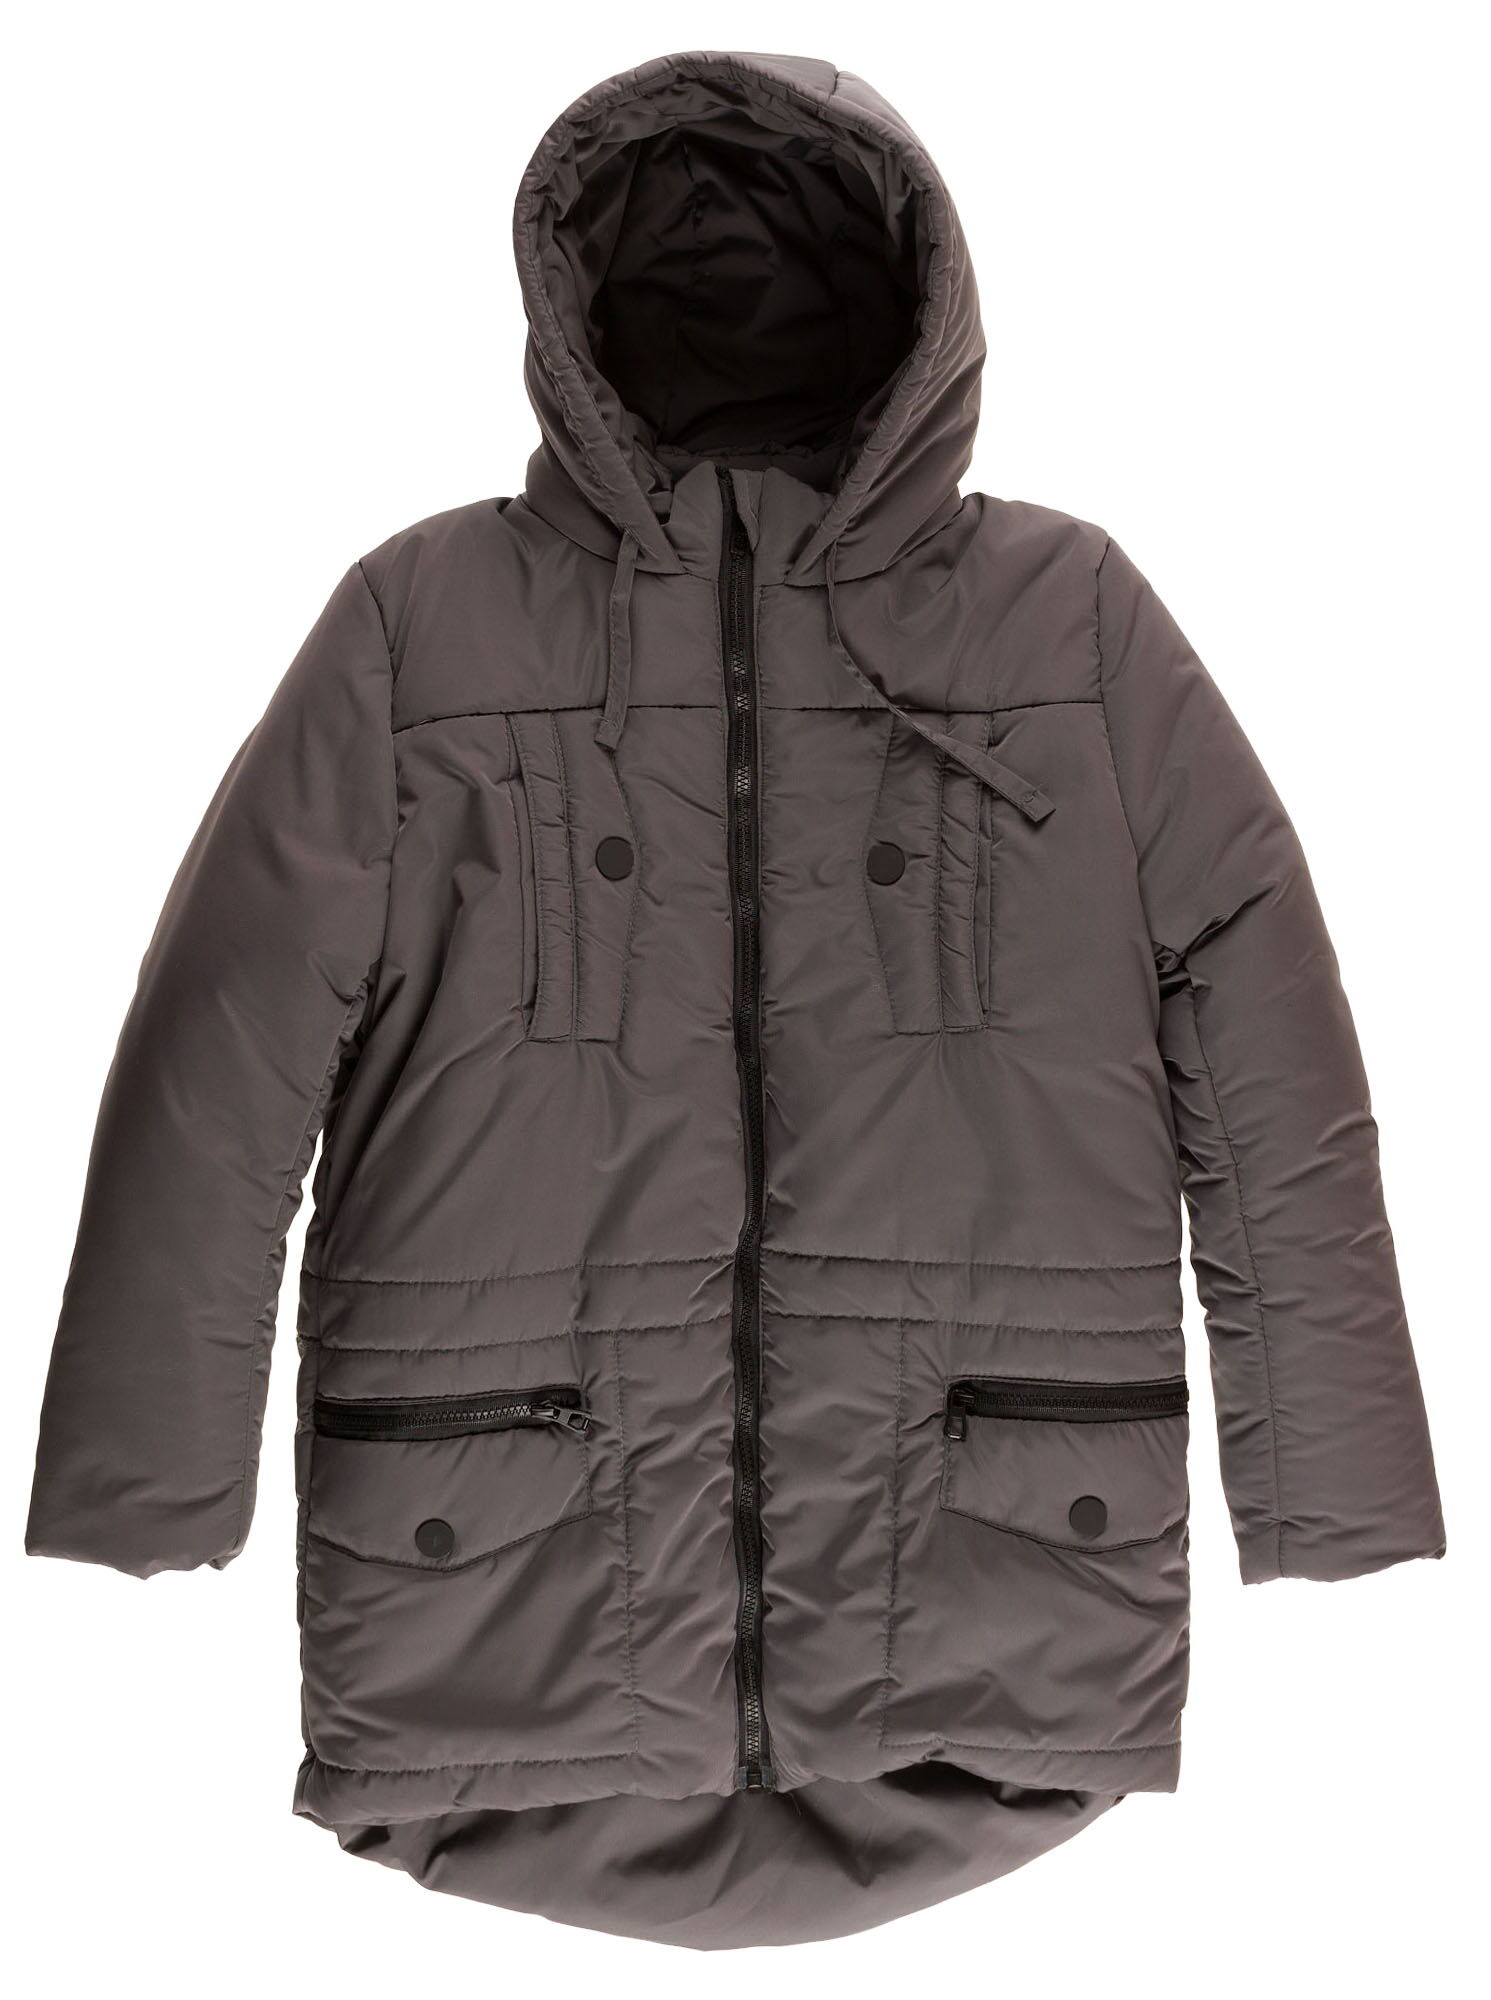 Куртка зимняя для мальчика Одягайко серая 20091 - цена